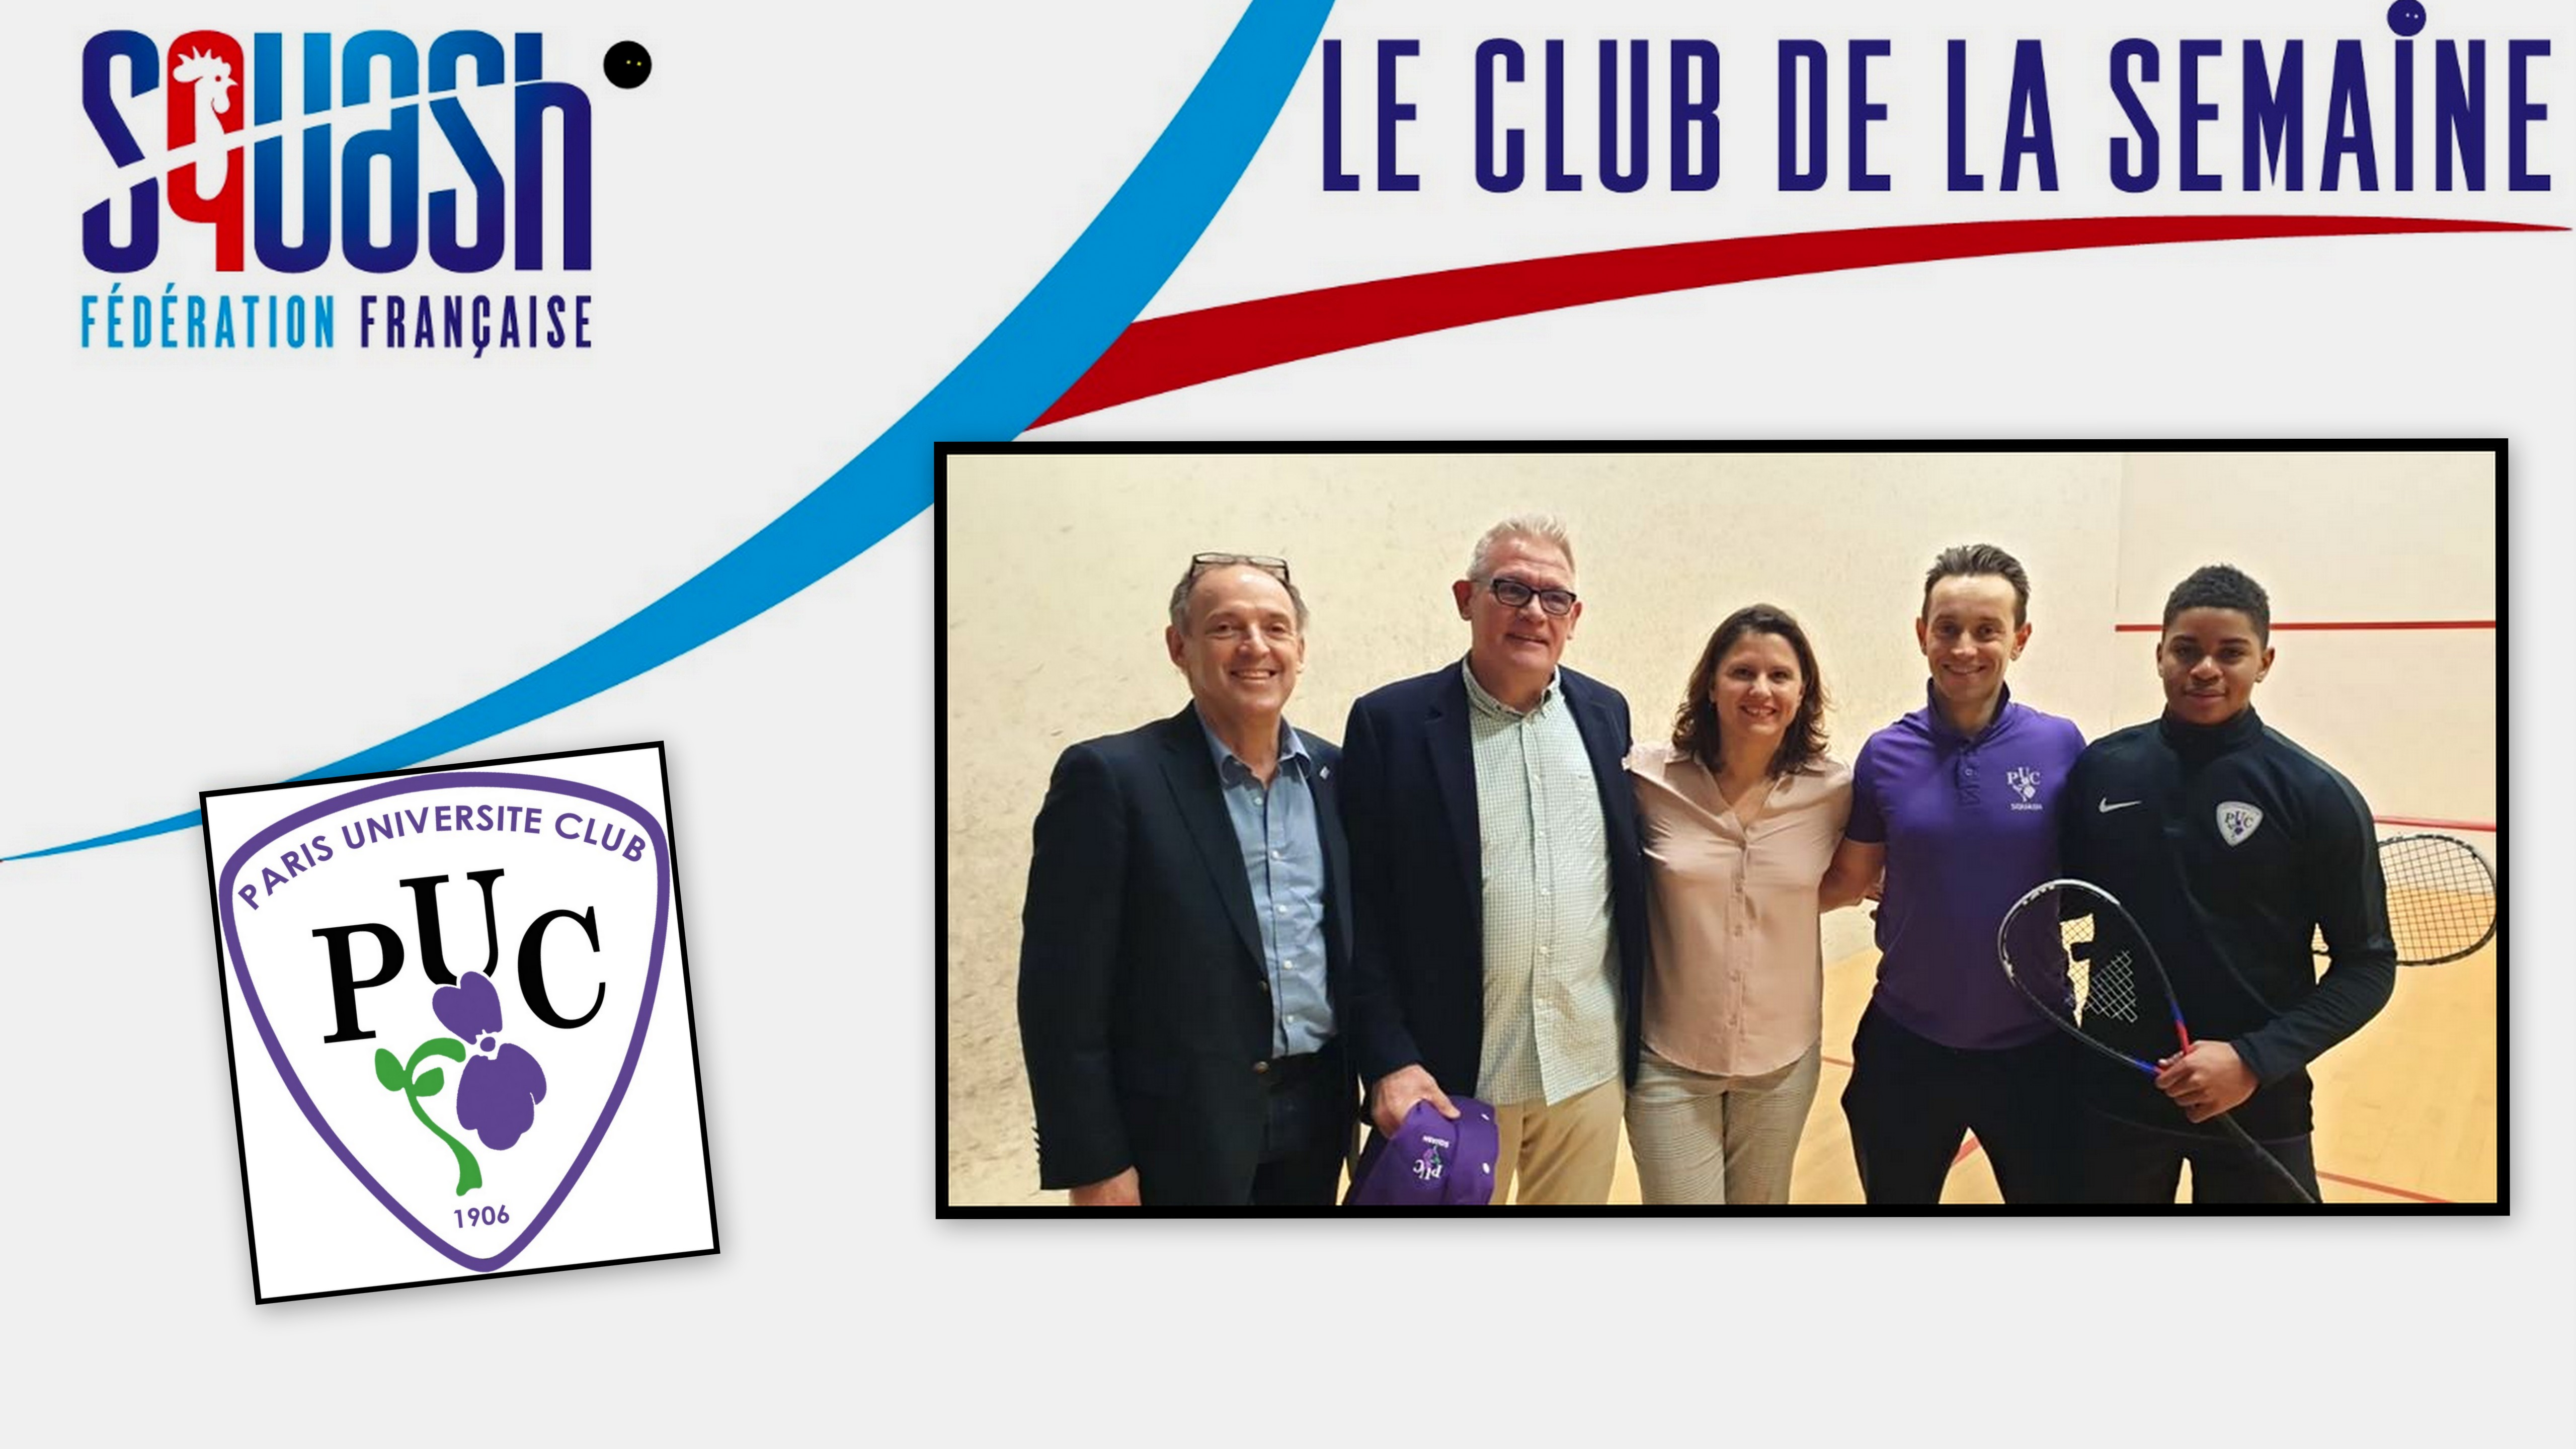 LE CLUB DE LA SEMAINE : PARIS UNIVERSITÉ CLUB